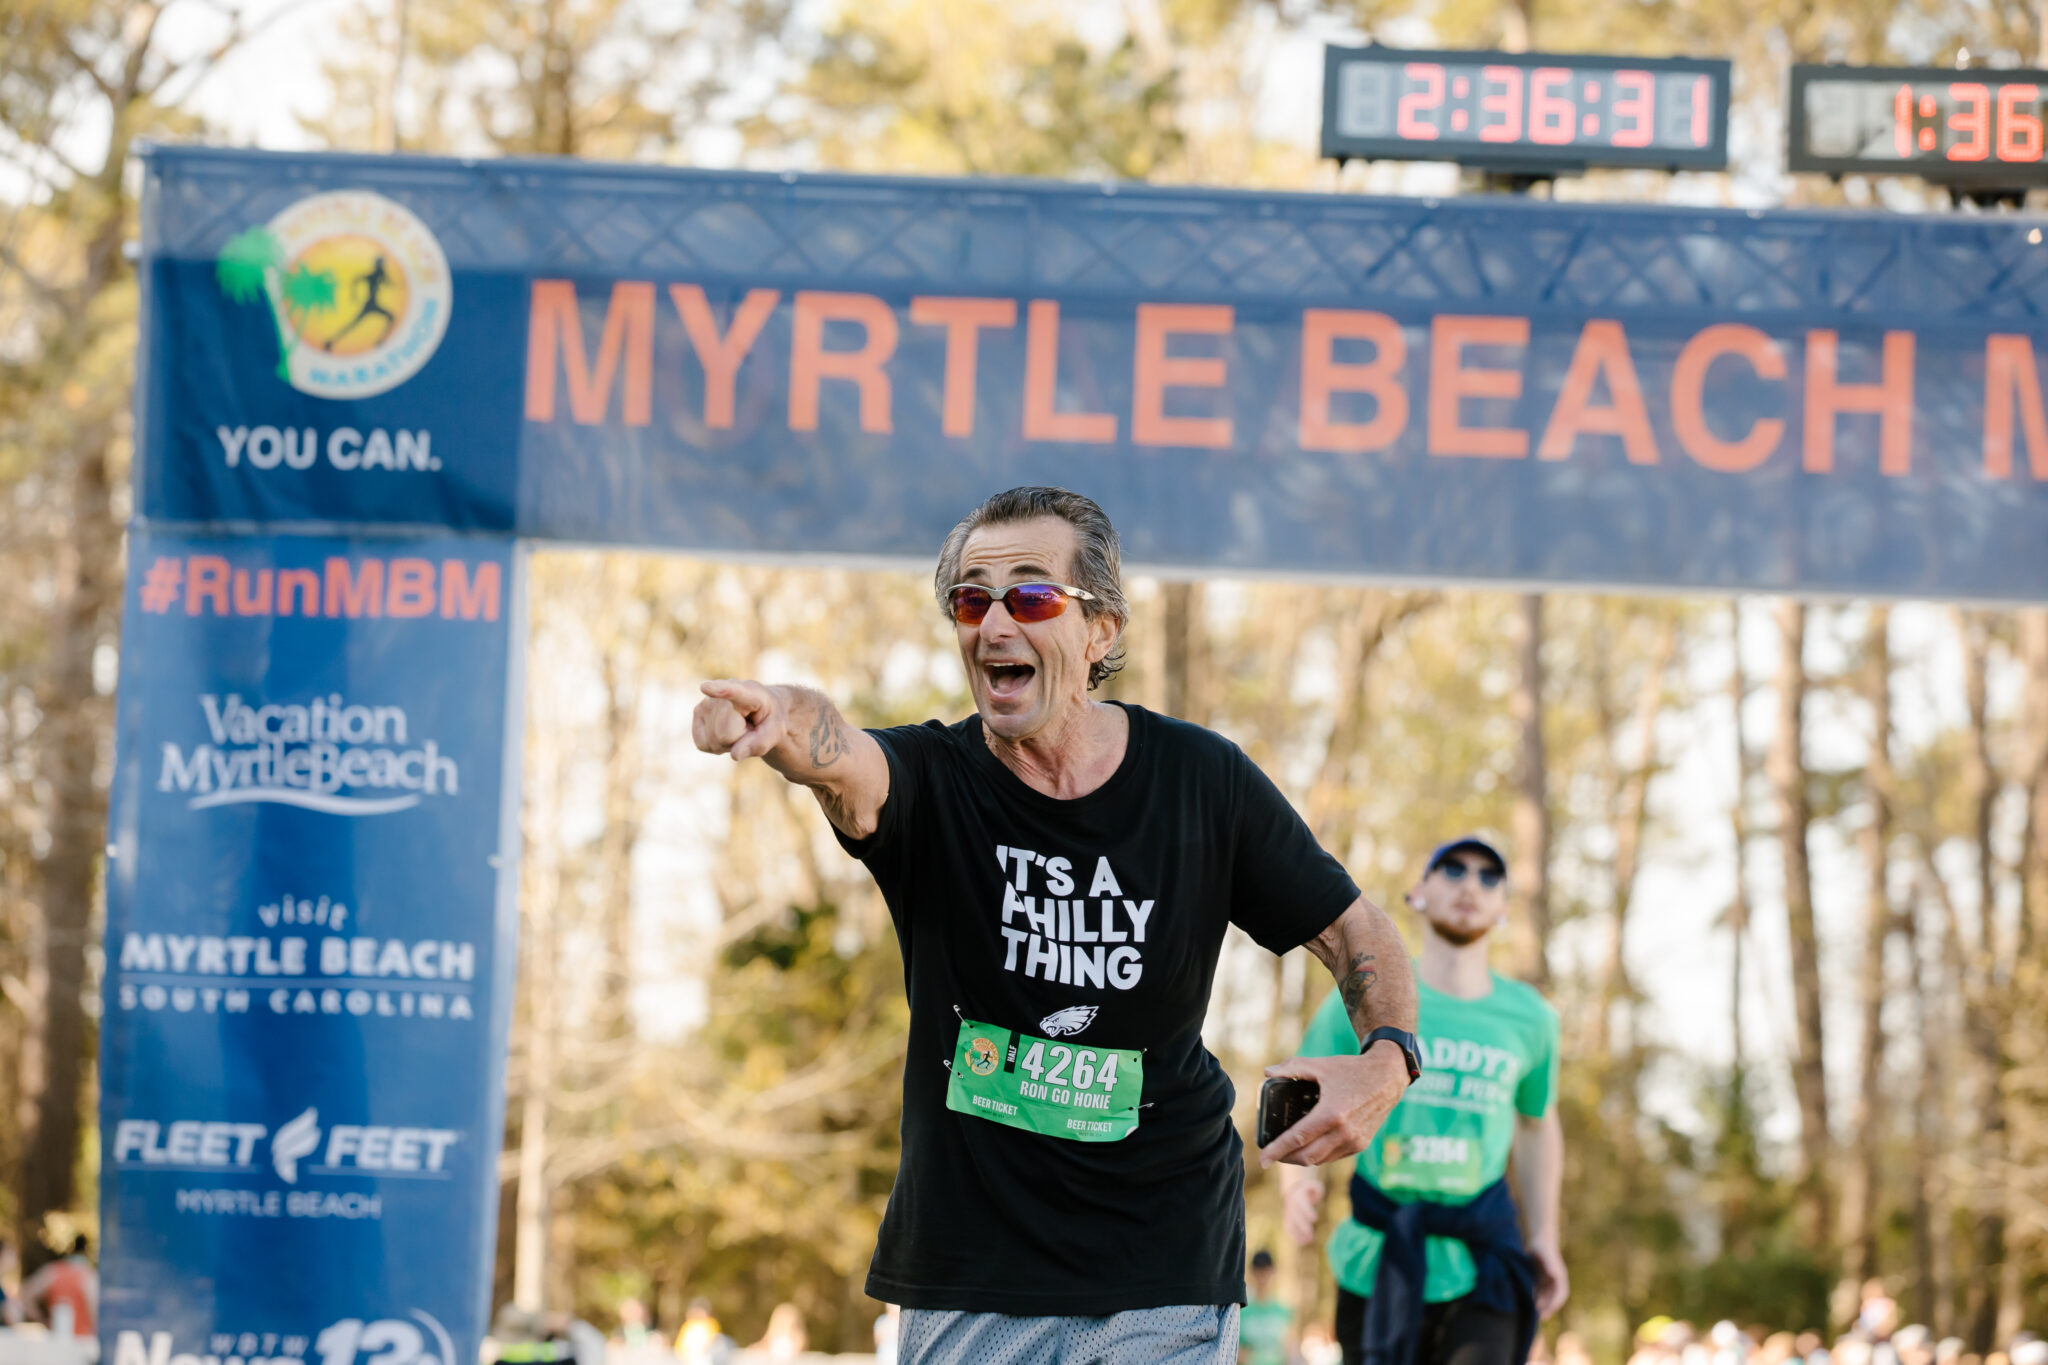 Myrtle Beach Marathon Flat, Fast & Fun Course in Myrtle Beach, SC!